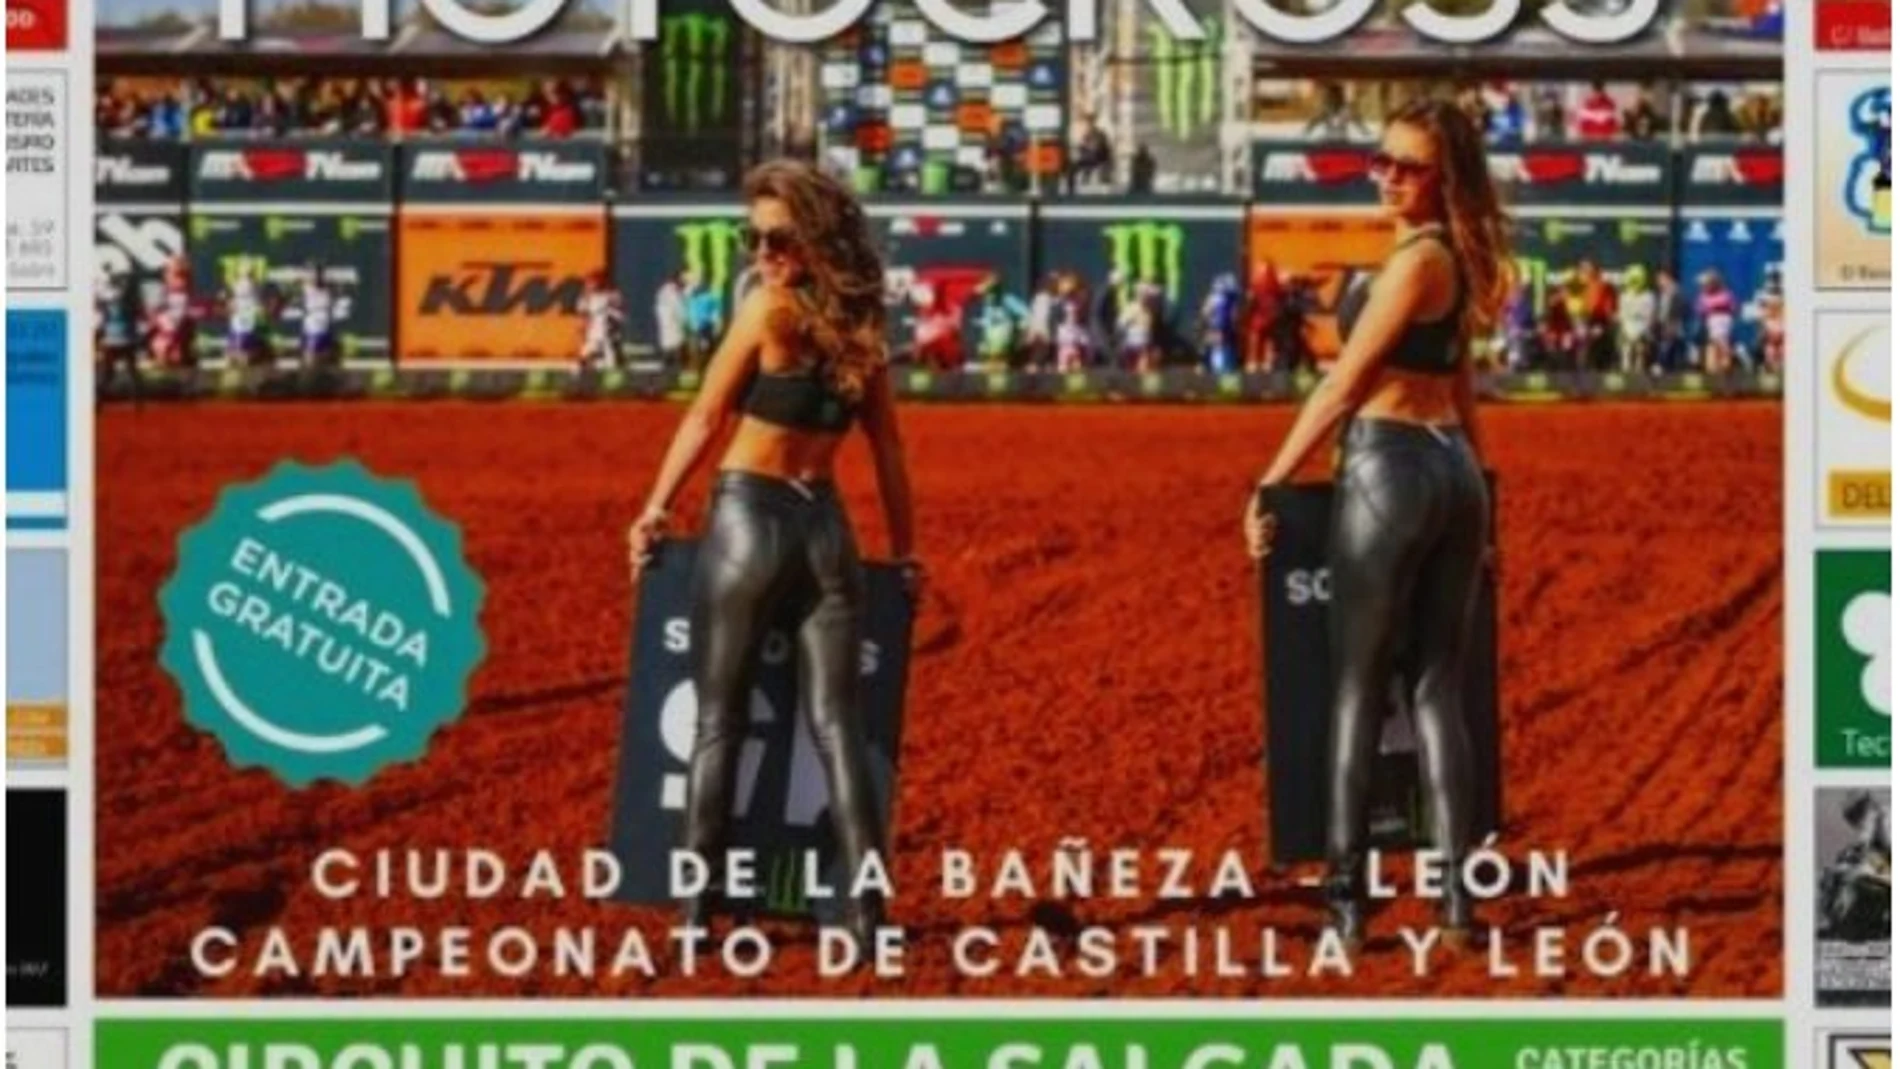 Fragmento del cartel de la carrera de motocross en La Bañeza, León.